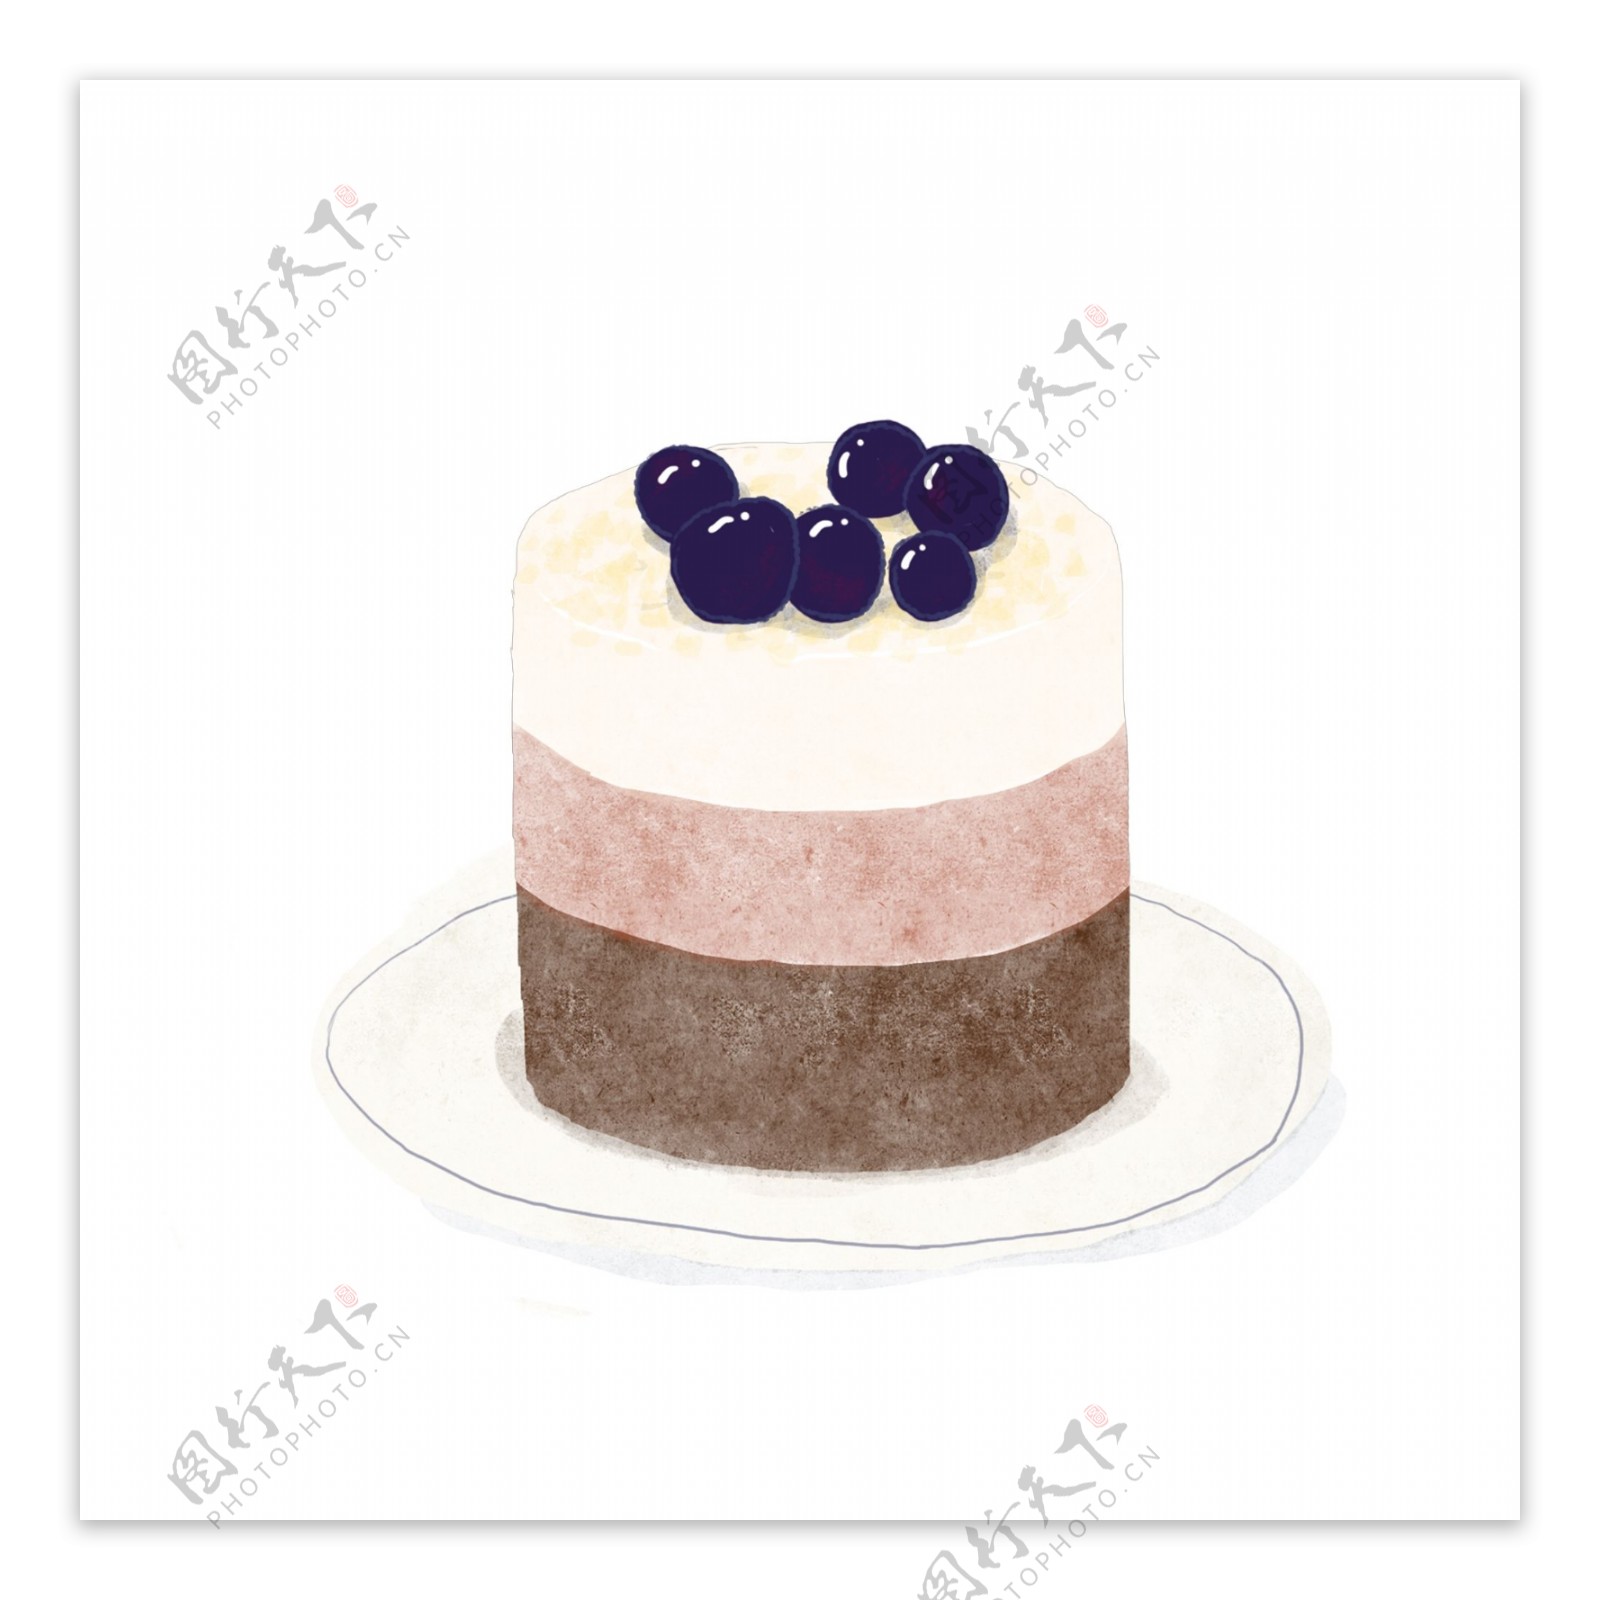 蓝莓小蛋糕